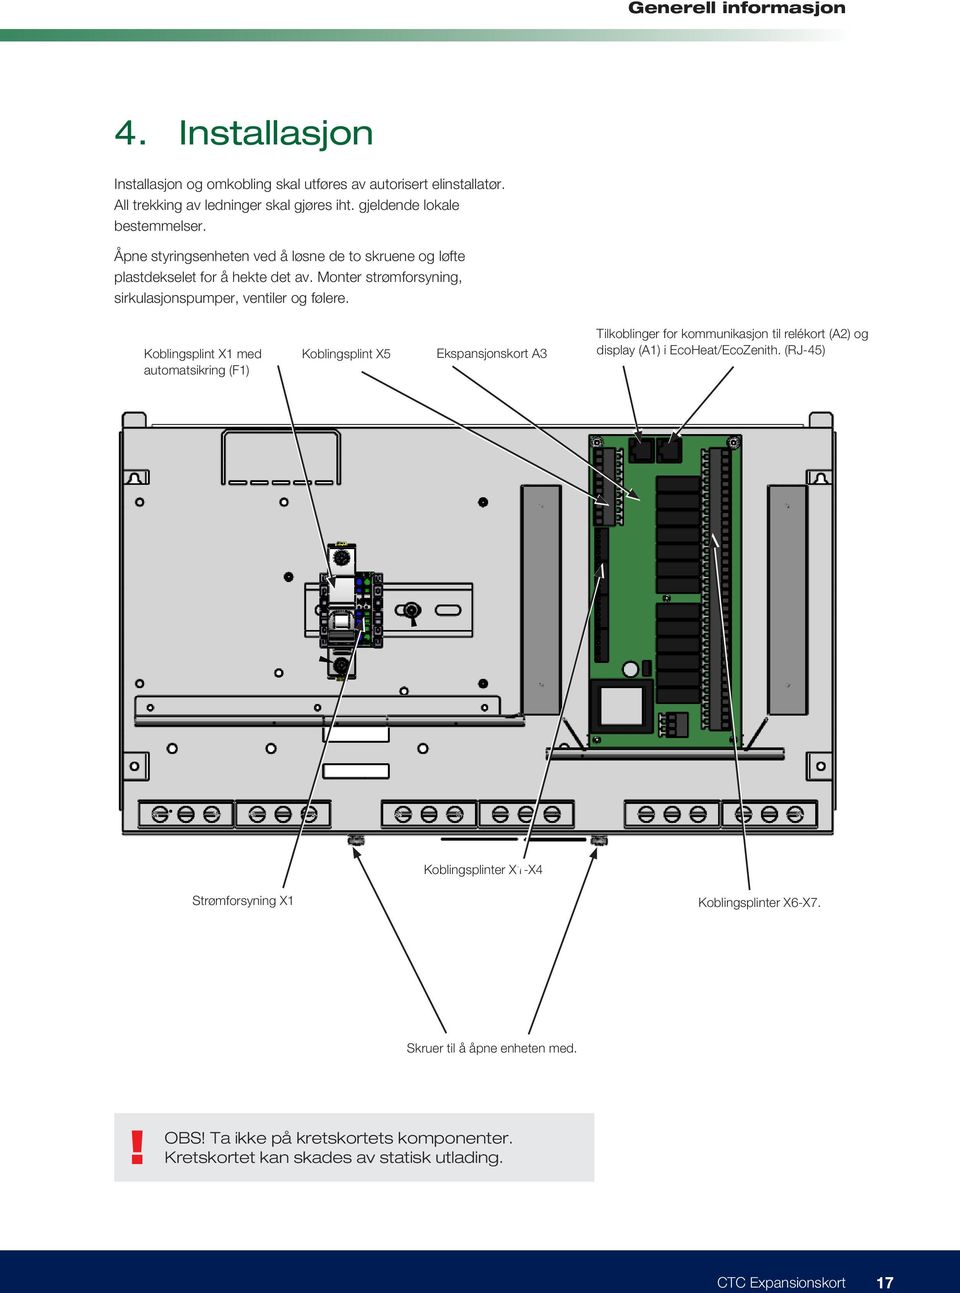 Koblingsplint X1 med automatsikring (F1) Koblingsplint X5 Ekspansjonskort A3 Tilkoblinger for kommunikasjon til relékort (A2) og display (A1) i EcoHeat/EcoZenith.